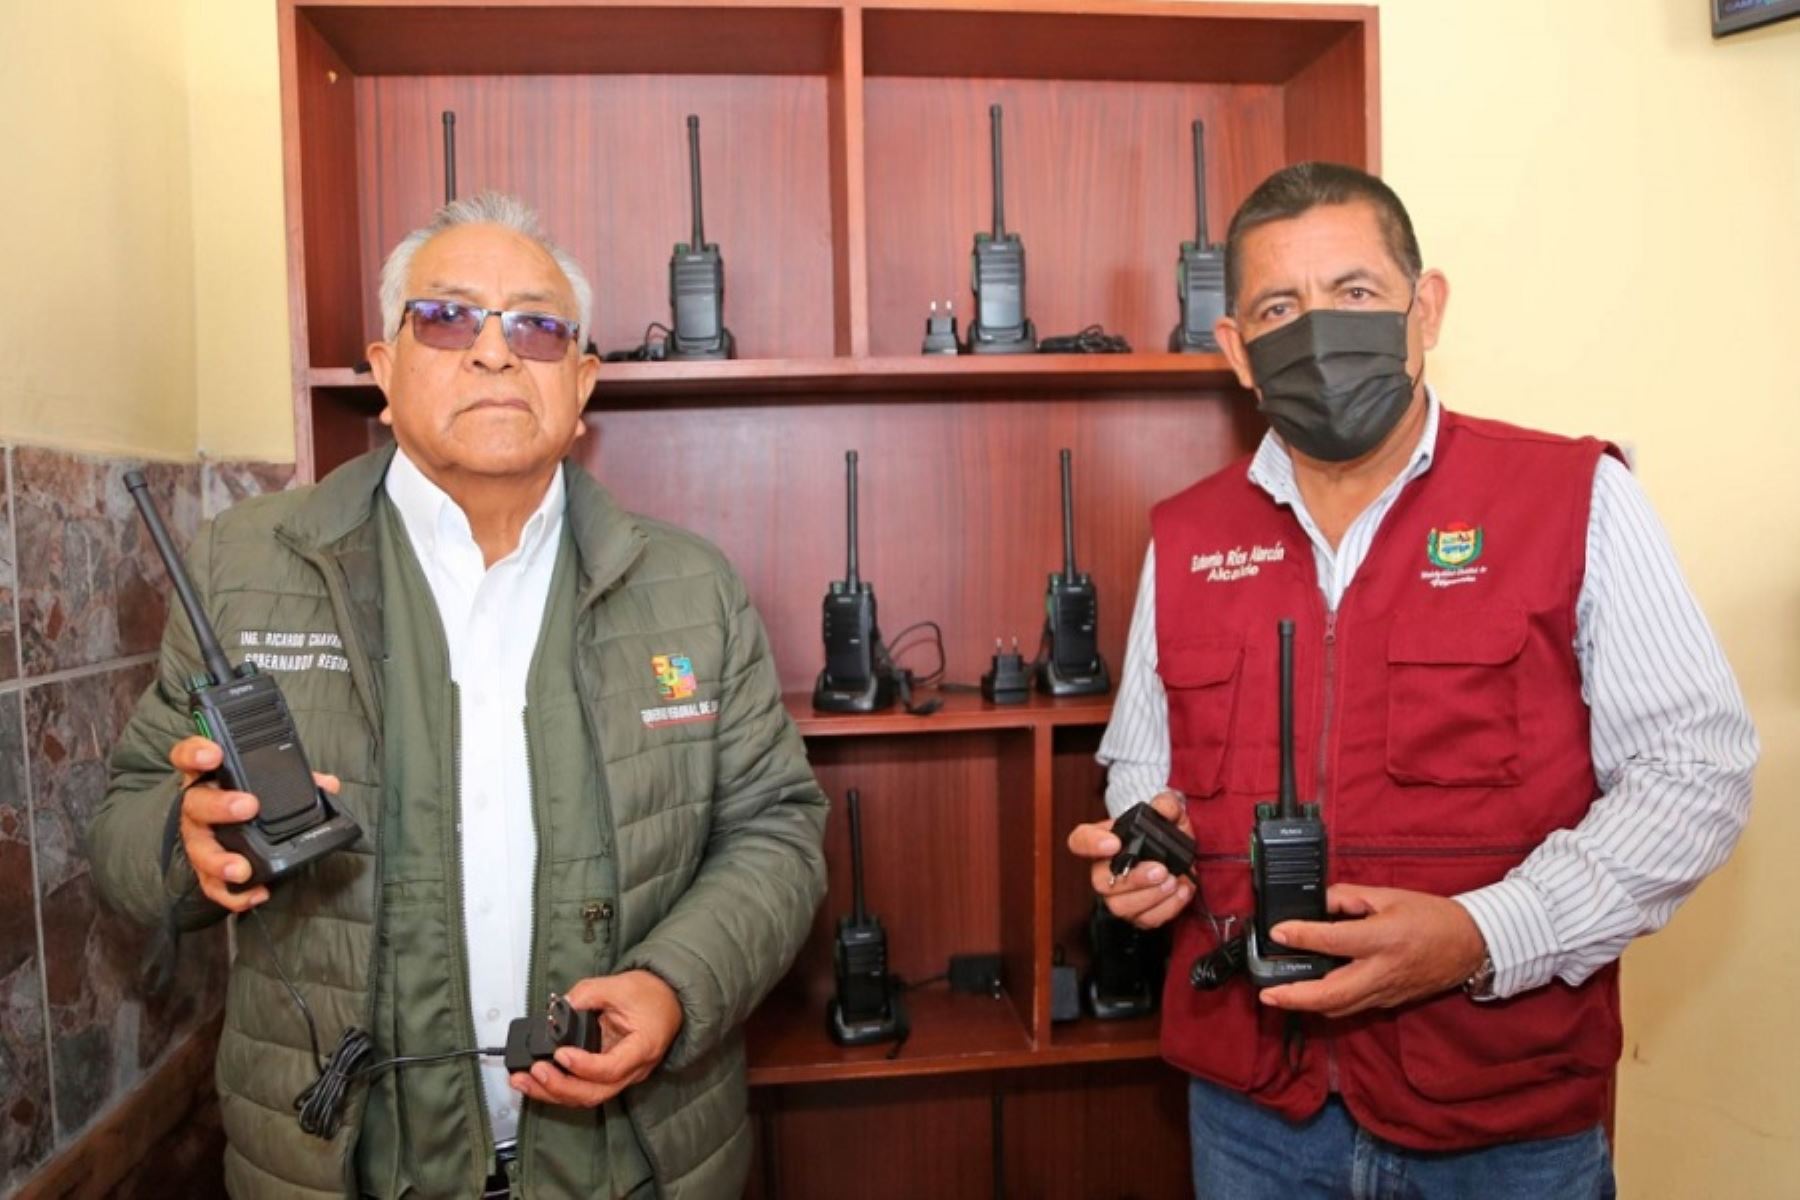 El gobernador regional de Lima provincias, Ricardo Chavarría Oria, entregó culminado el proyecto de "Mejoramiento del sistema de telecomunicaciones” en el distrito de Végueta, provincia de Huaura.